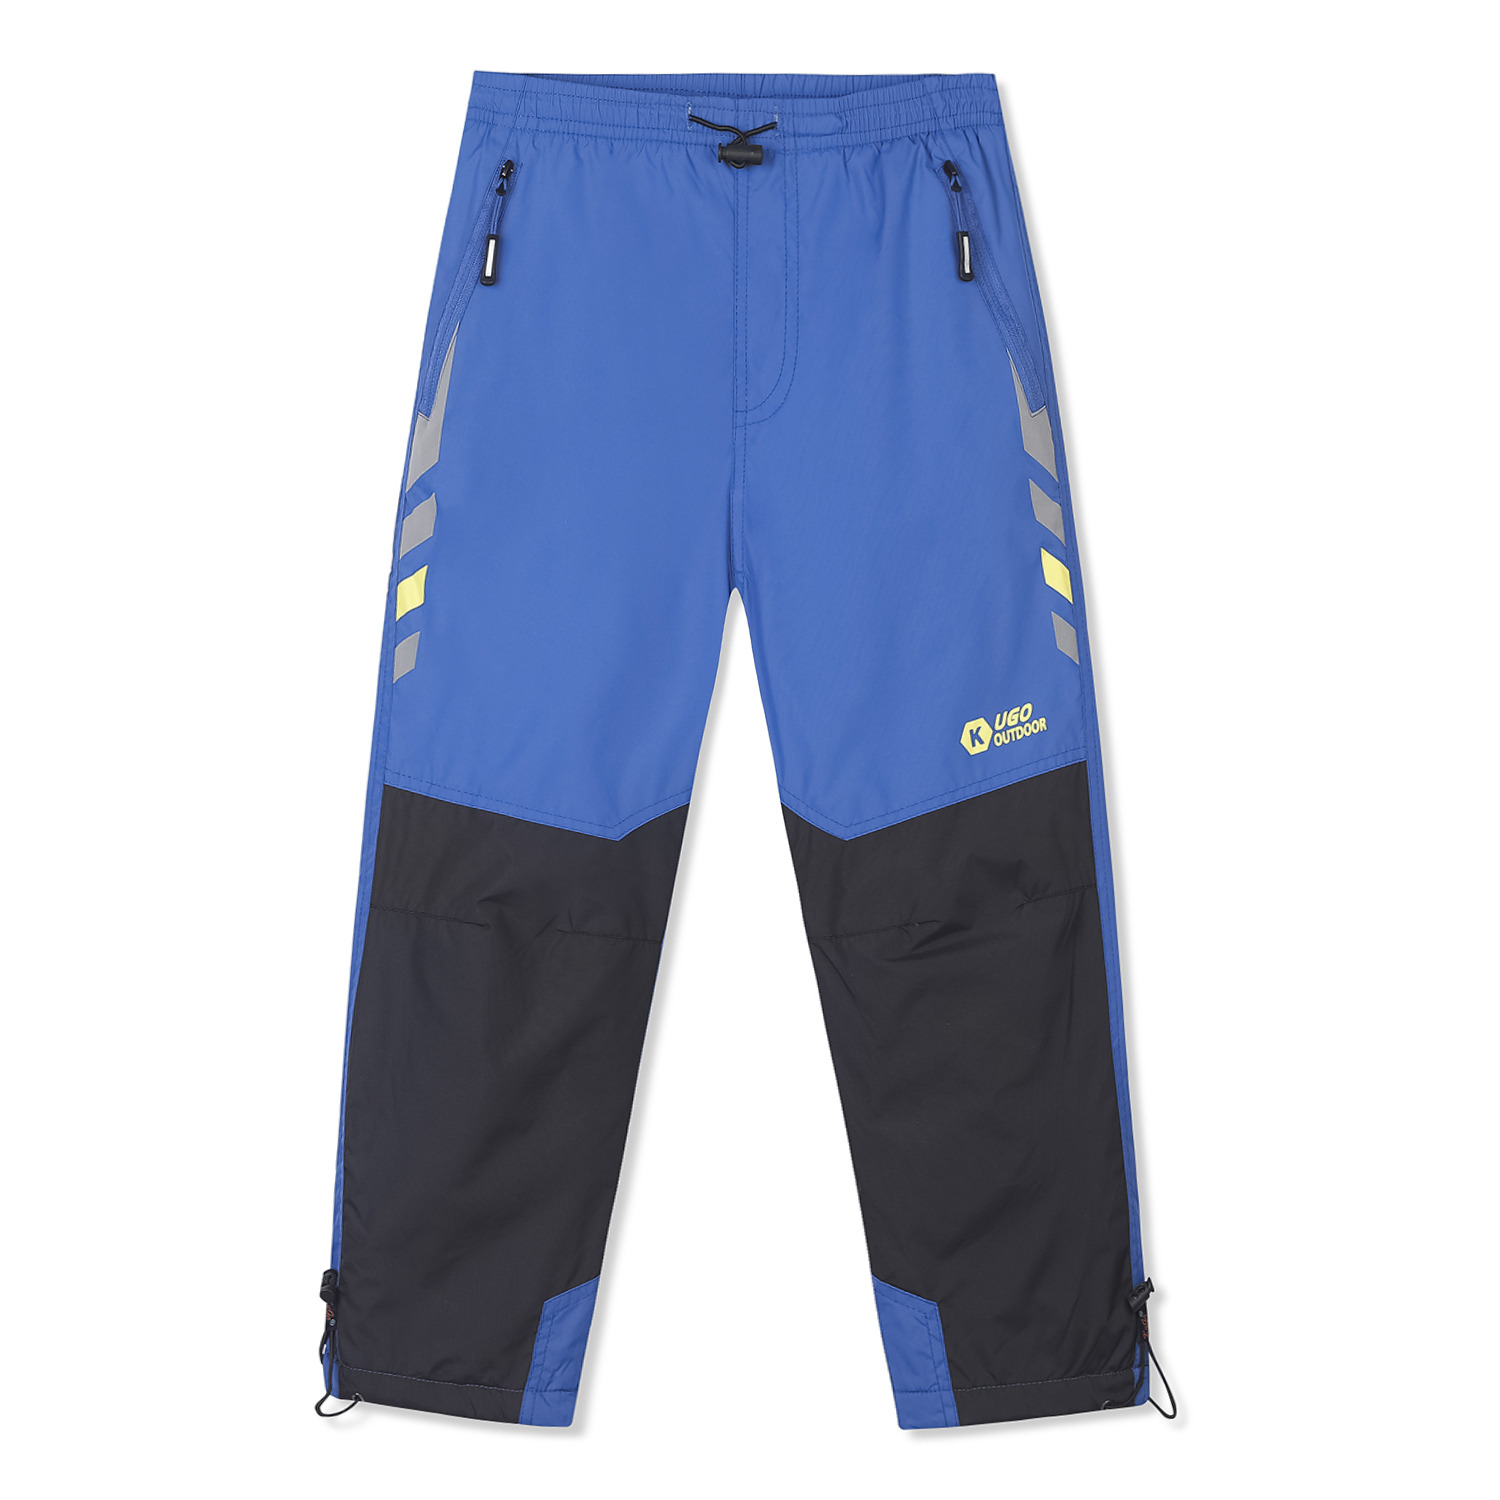 Chlapecké šusťákové kalhoty, zateplené - KUGO DK7091k, modrá Barva: Modrá, Velikost: 104